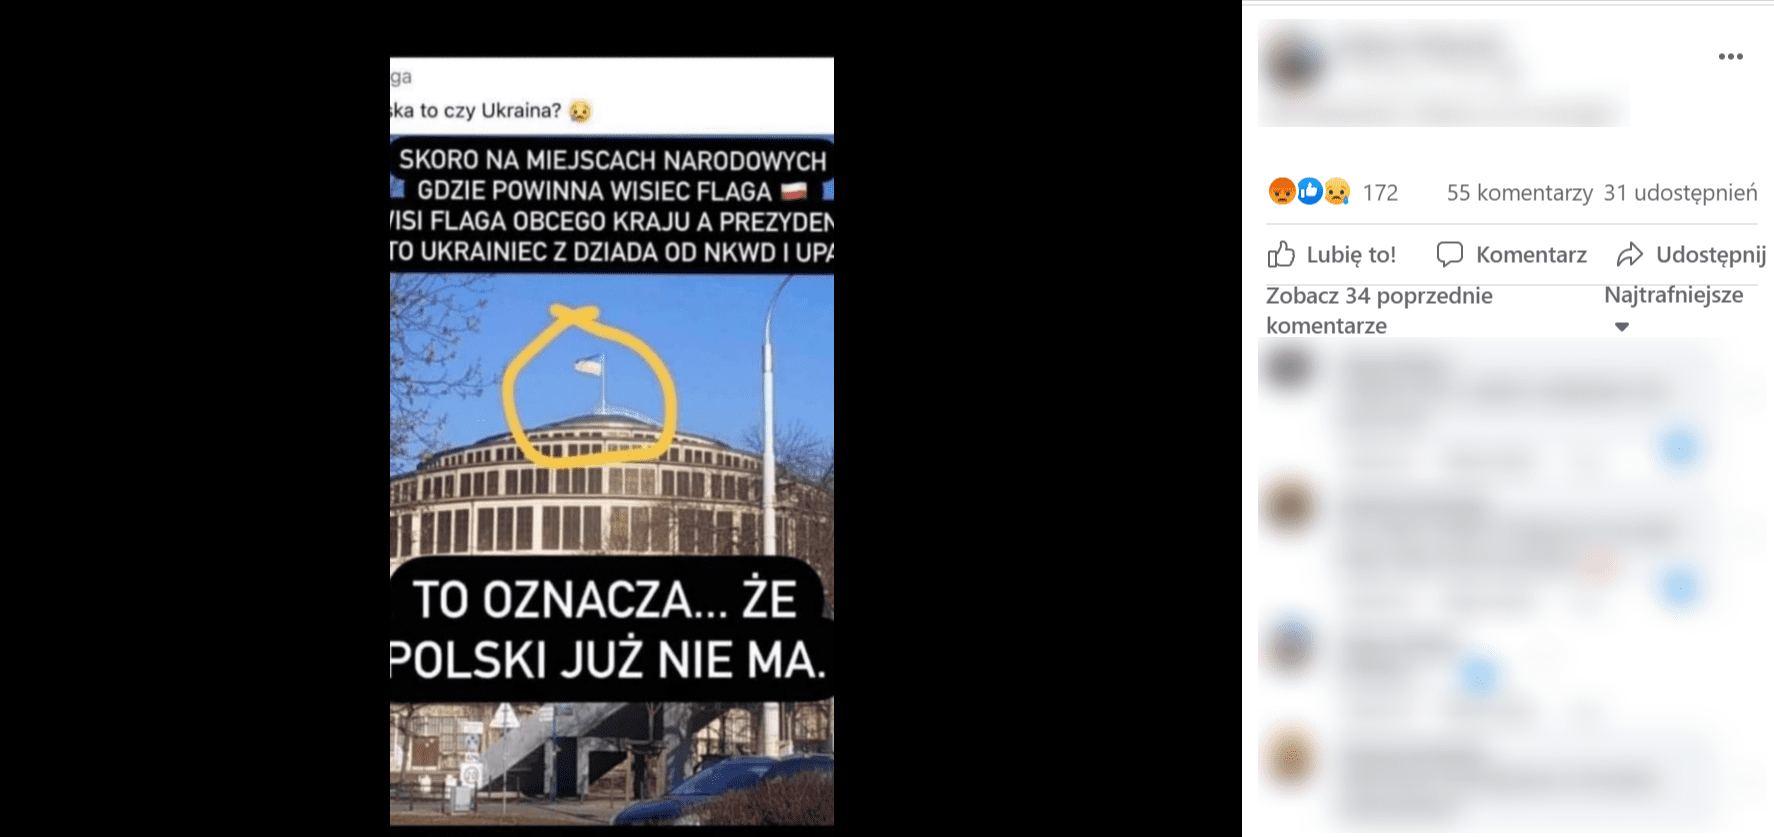 Zrzut ekranu przedstawiający post na Facebooku. Na zdjęciu widoczna jest Hala Stulecia we Wrocławiu, a napis umieszczony w poście brzmi: „skoro na miejscach narodowych gdzie powinna wisiec polska flaga wisi flaga obcego kraju a prezydent to Ukrainiec z dziada od NKWD i UPA to oznacza… że Polski już nie ma”.